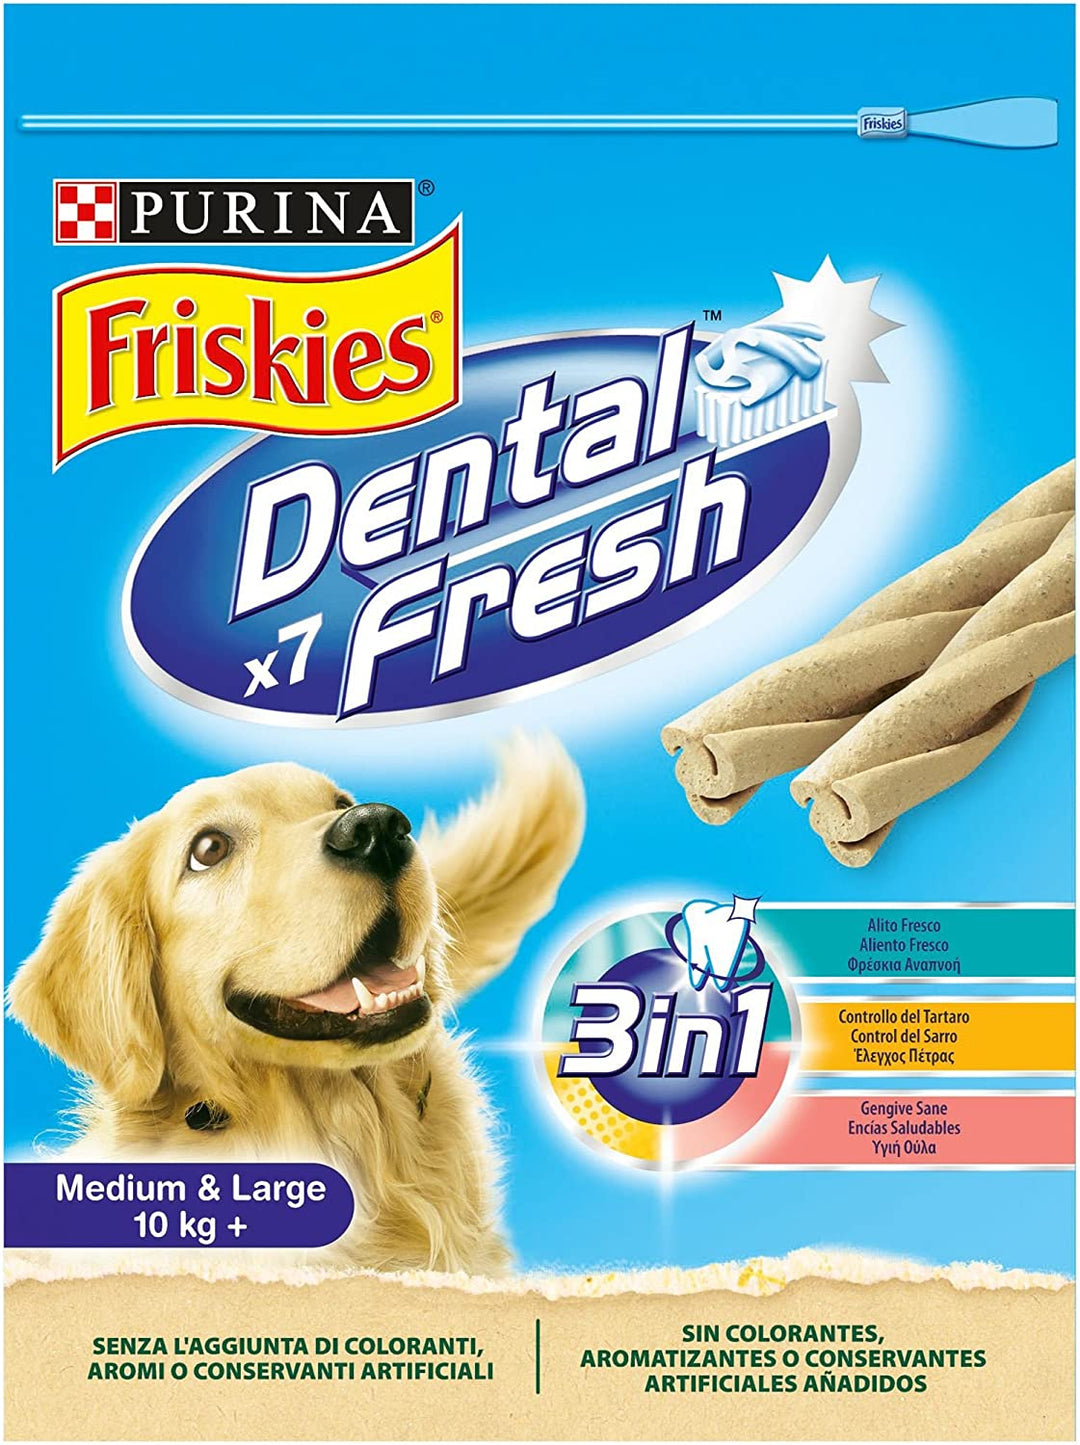 Friskies Dental Fresh, for Medium & Large dogs (+10kgs), 180g